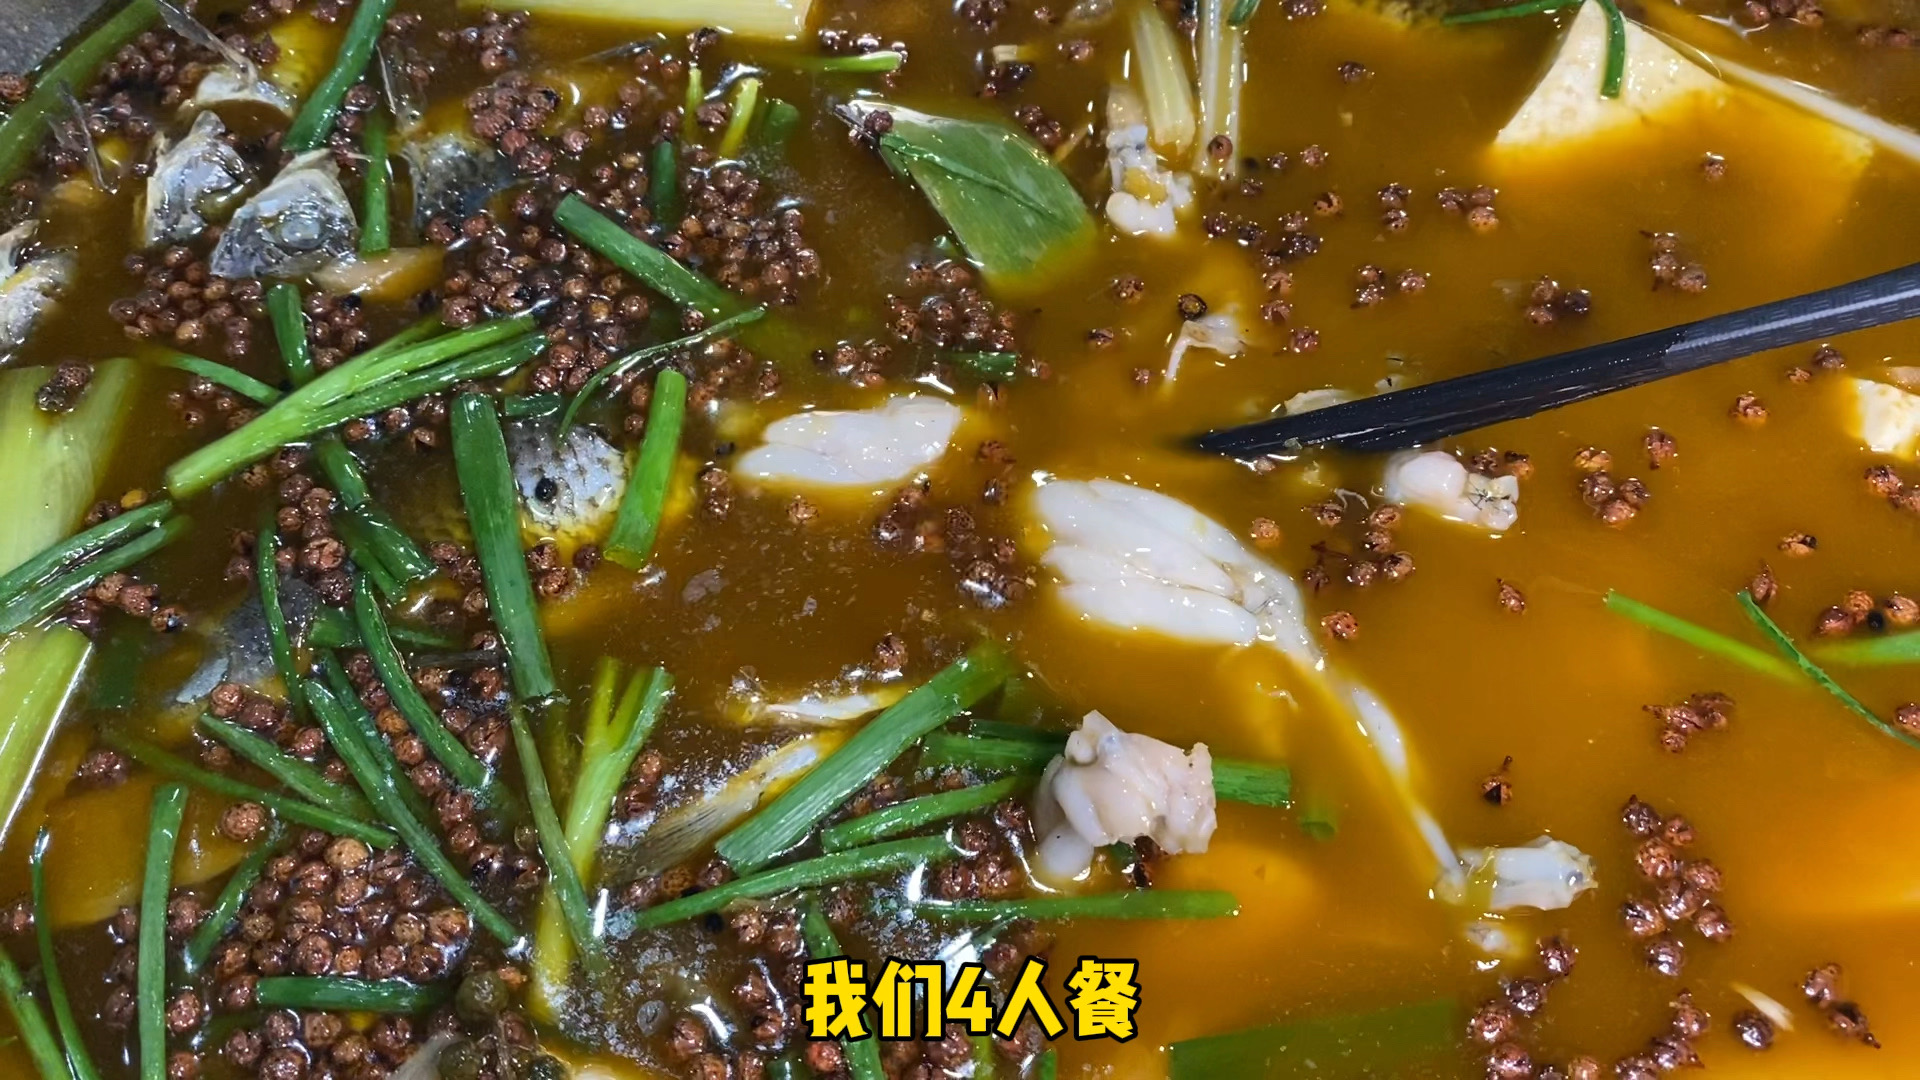 在重庆江北区也可以吃到正宗泡椒土鲫鱼了